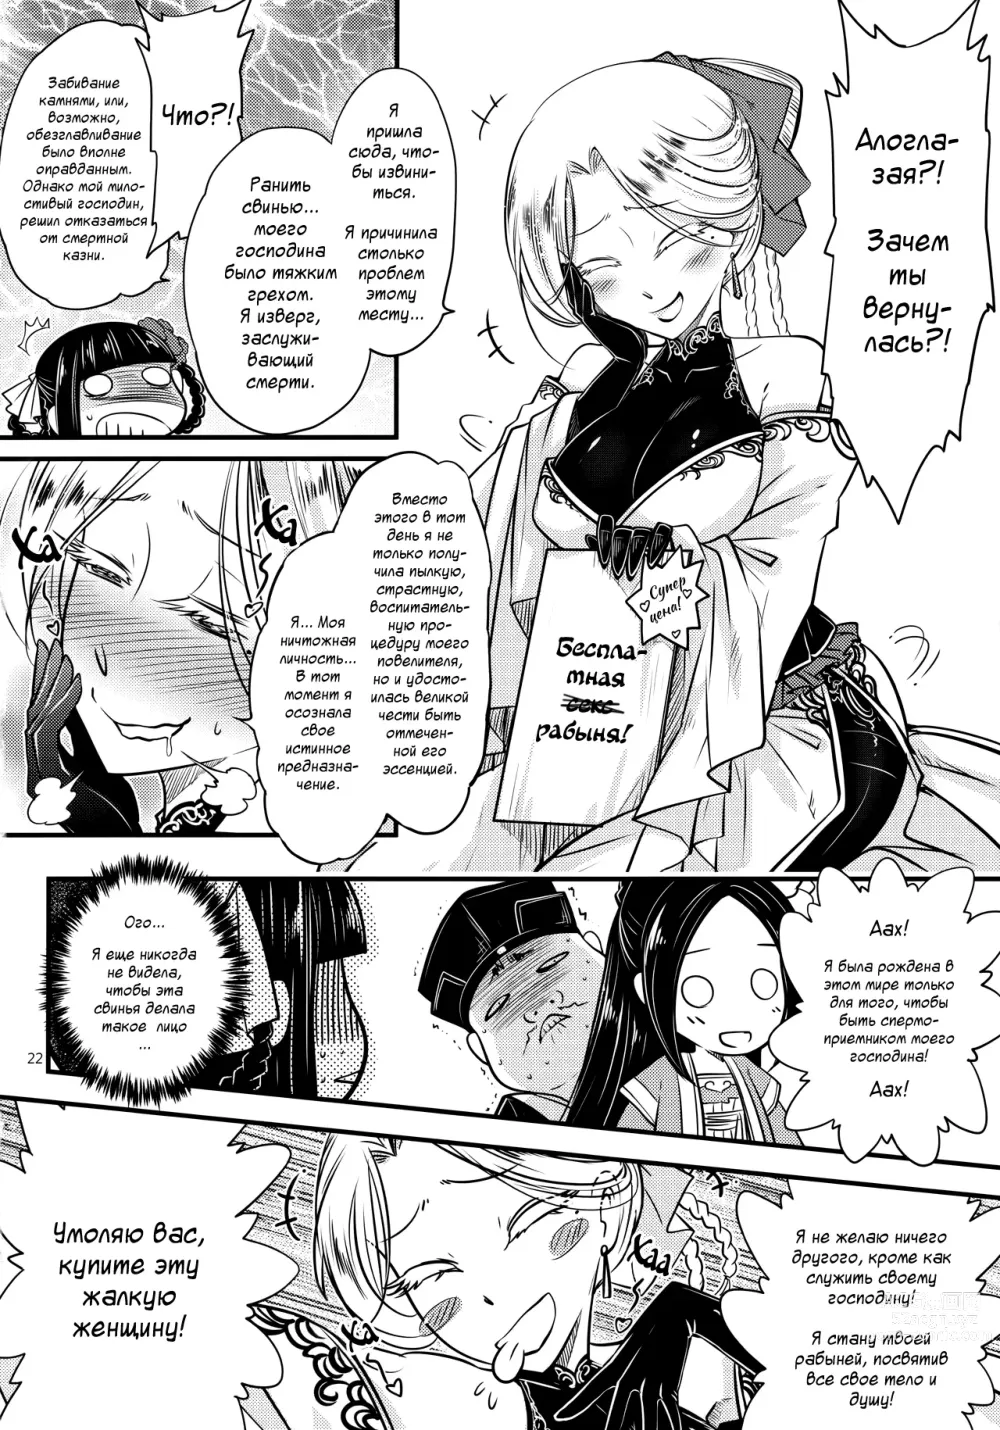 Page 23 of doujinshi Hyakkasou4 <<Akahitomiyasha, Tosuisen no Kyofu>>